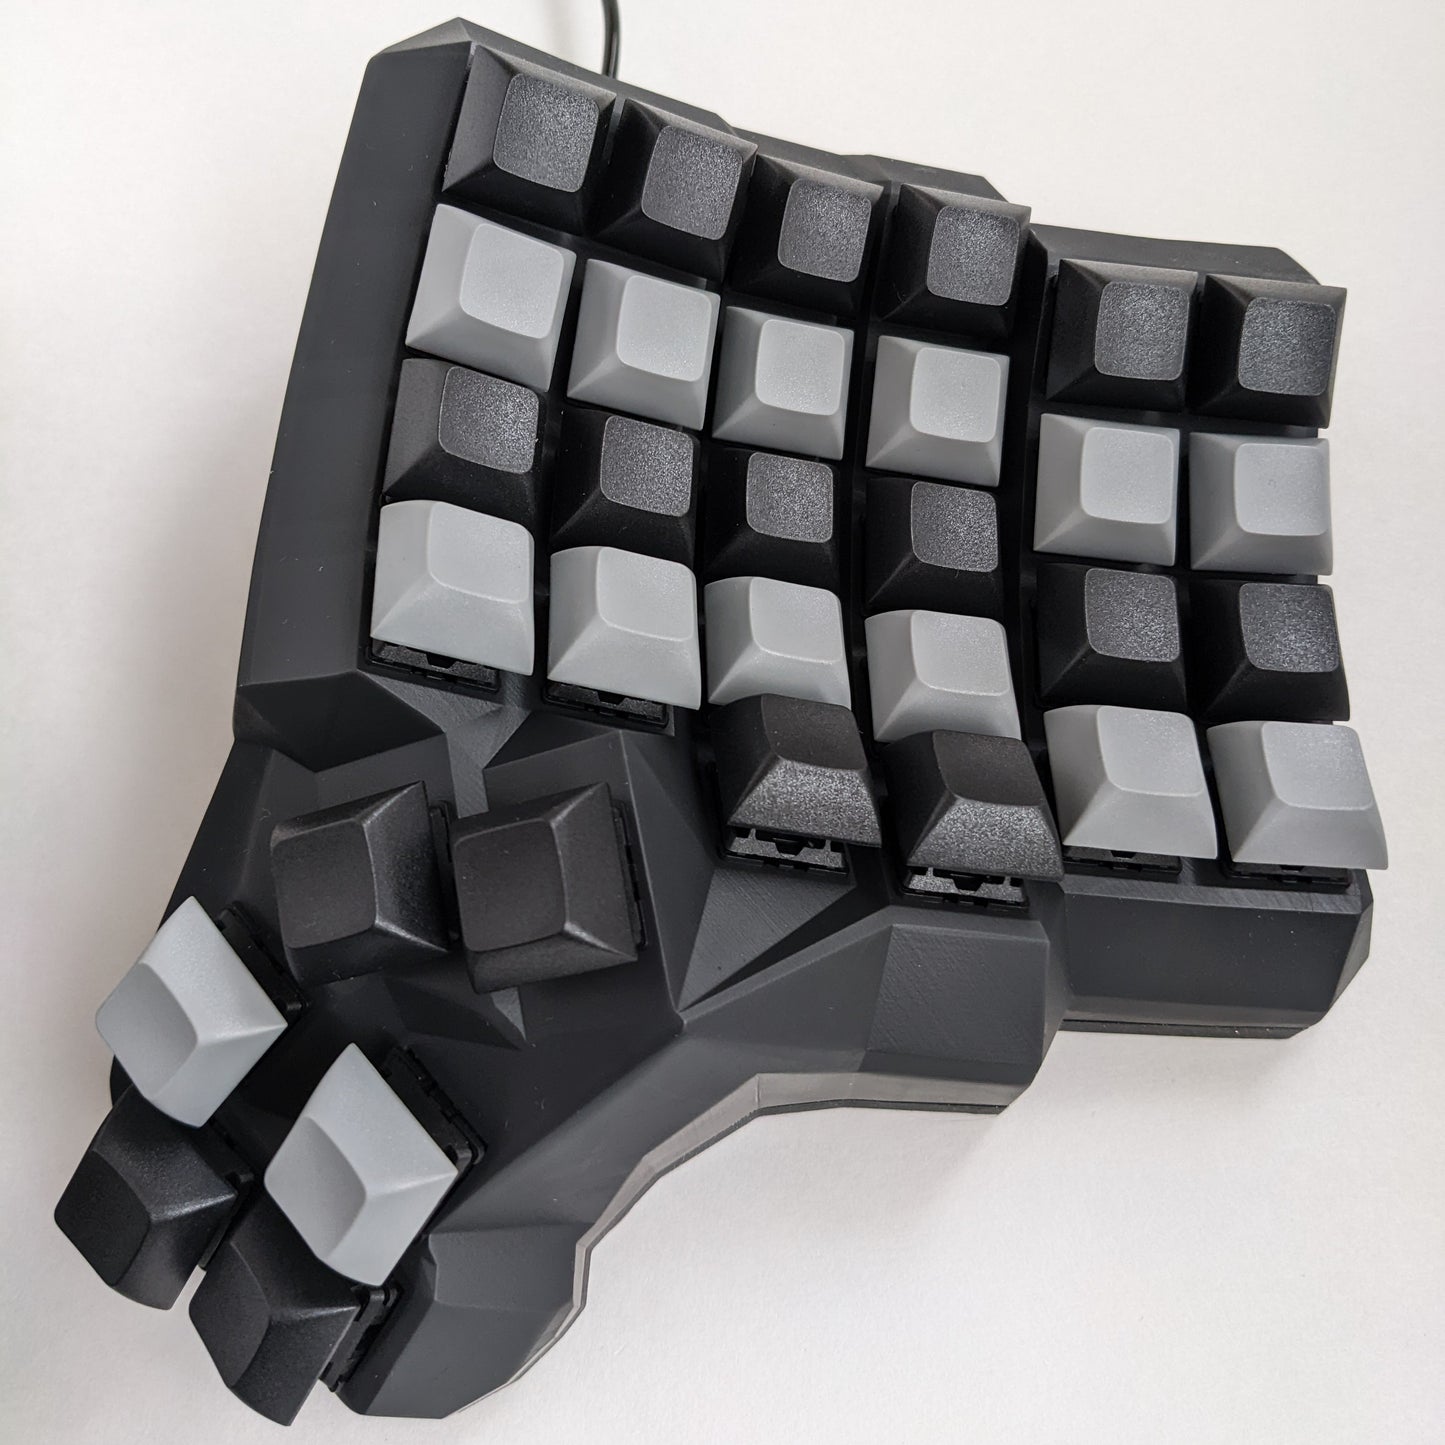 Dactyl Manuform Keyboard